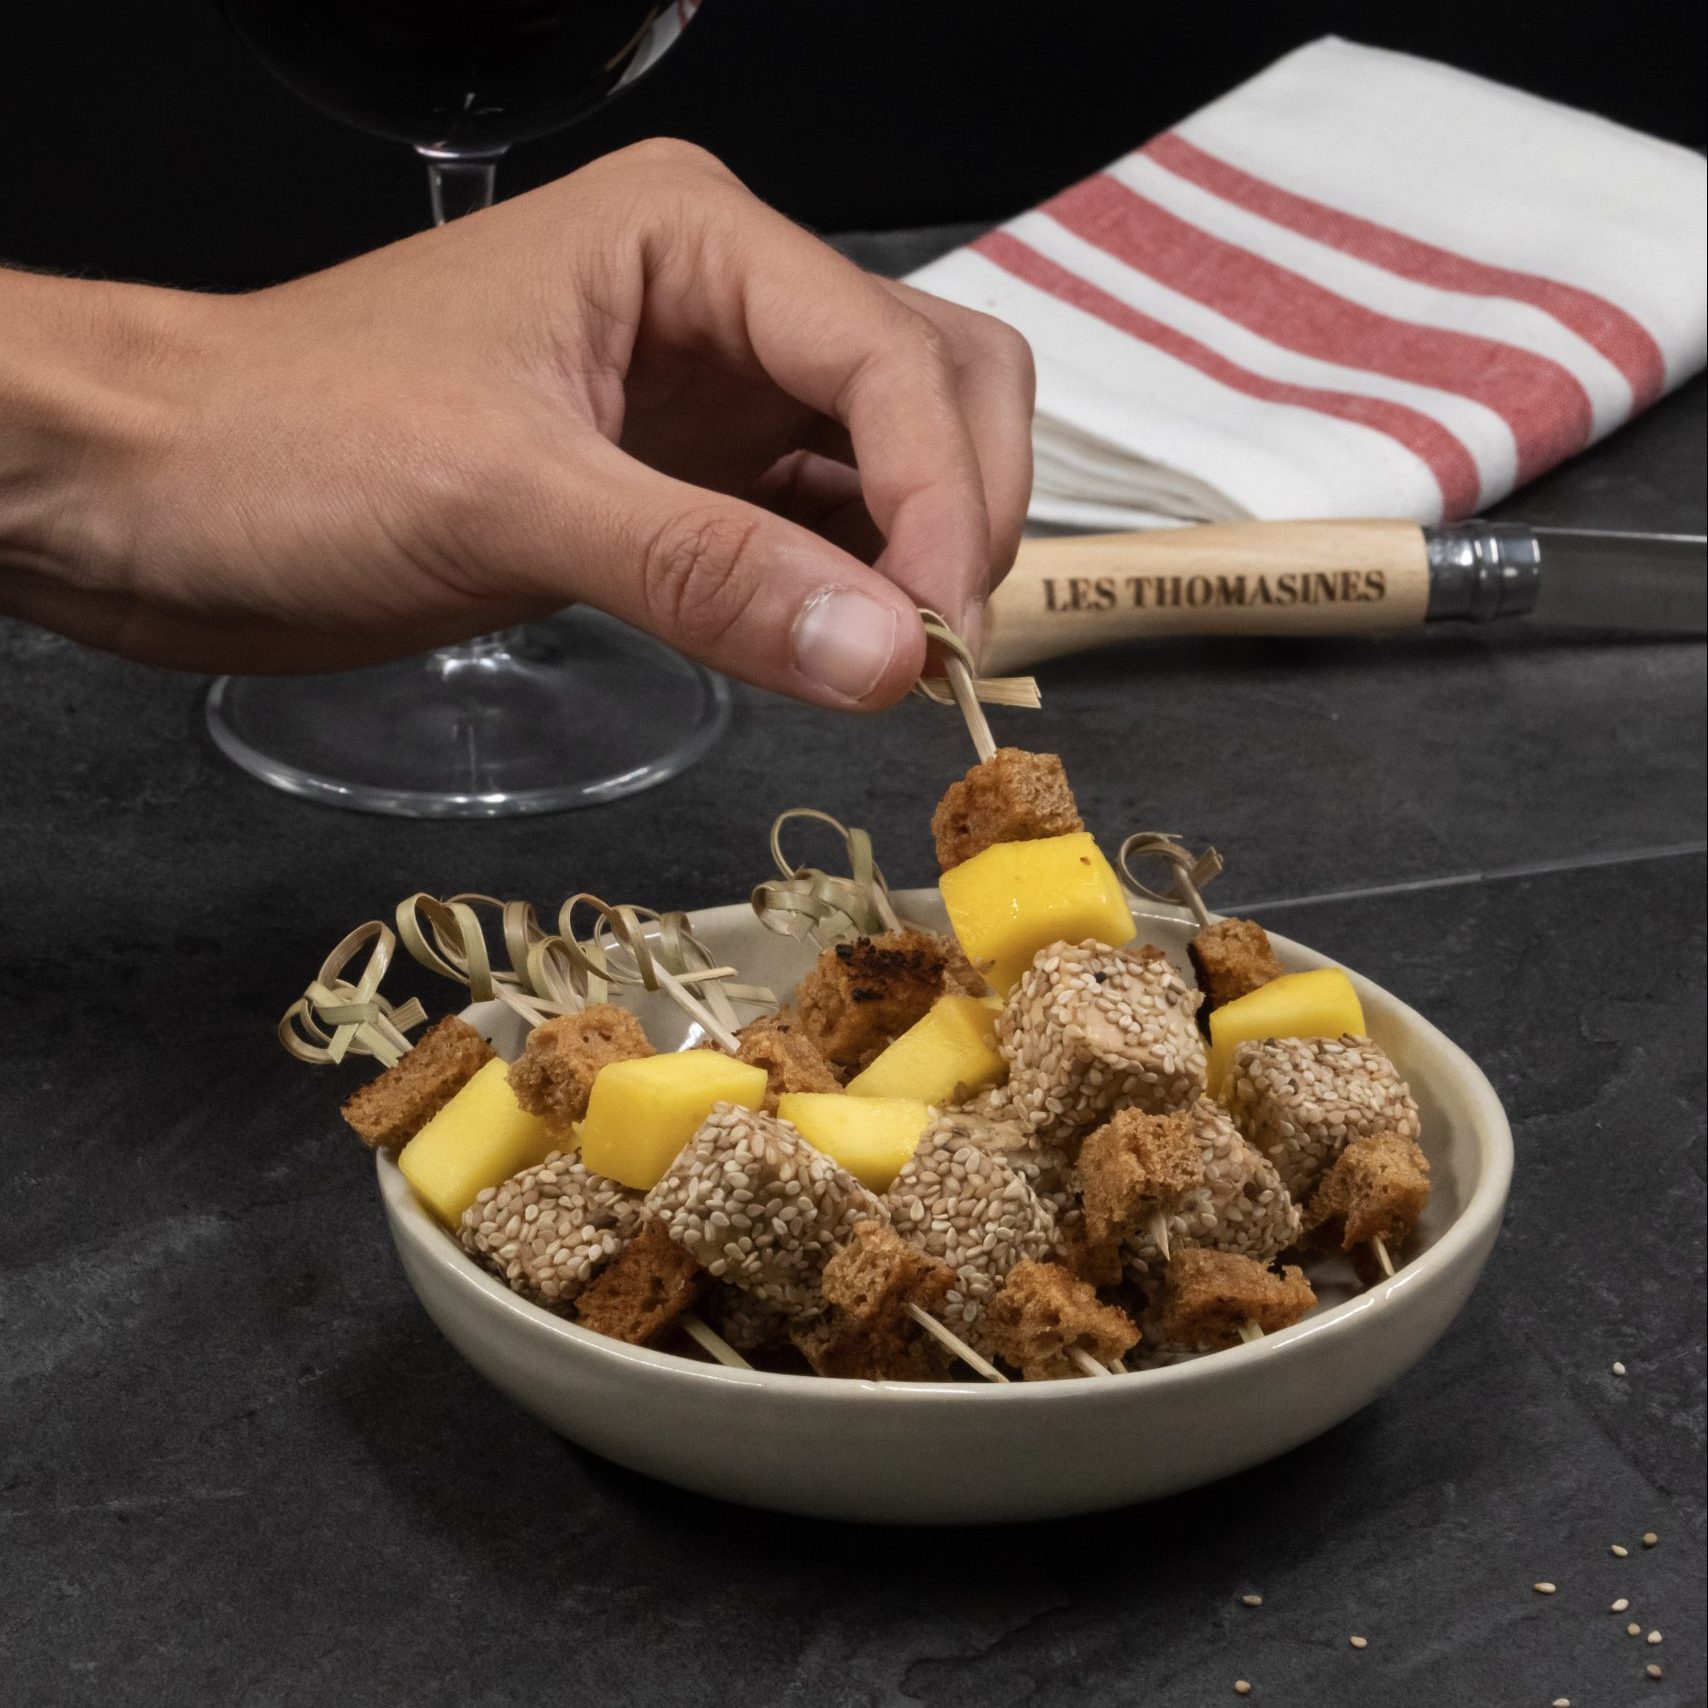 Recette LES THOMASINES Mini brochette de foie gras et mangue